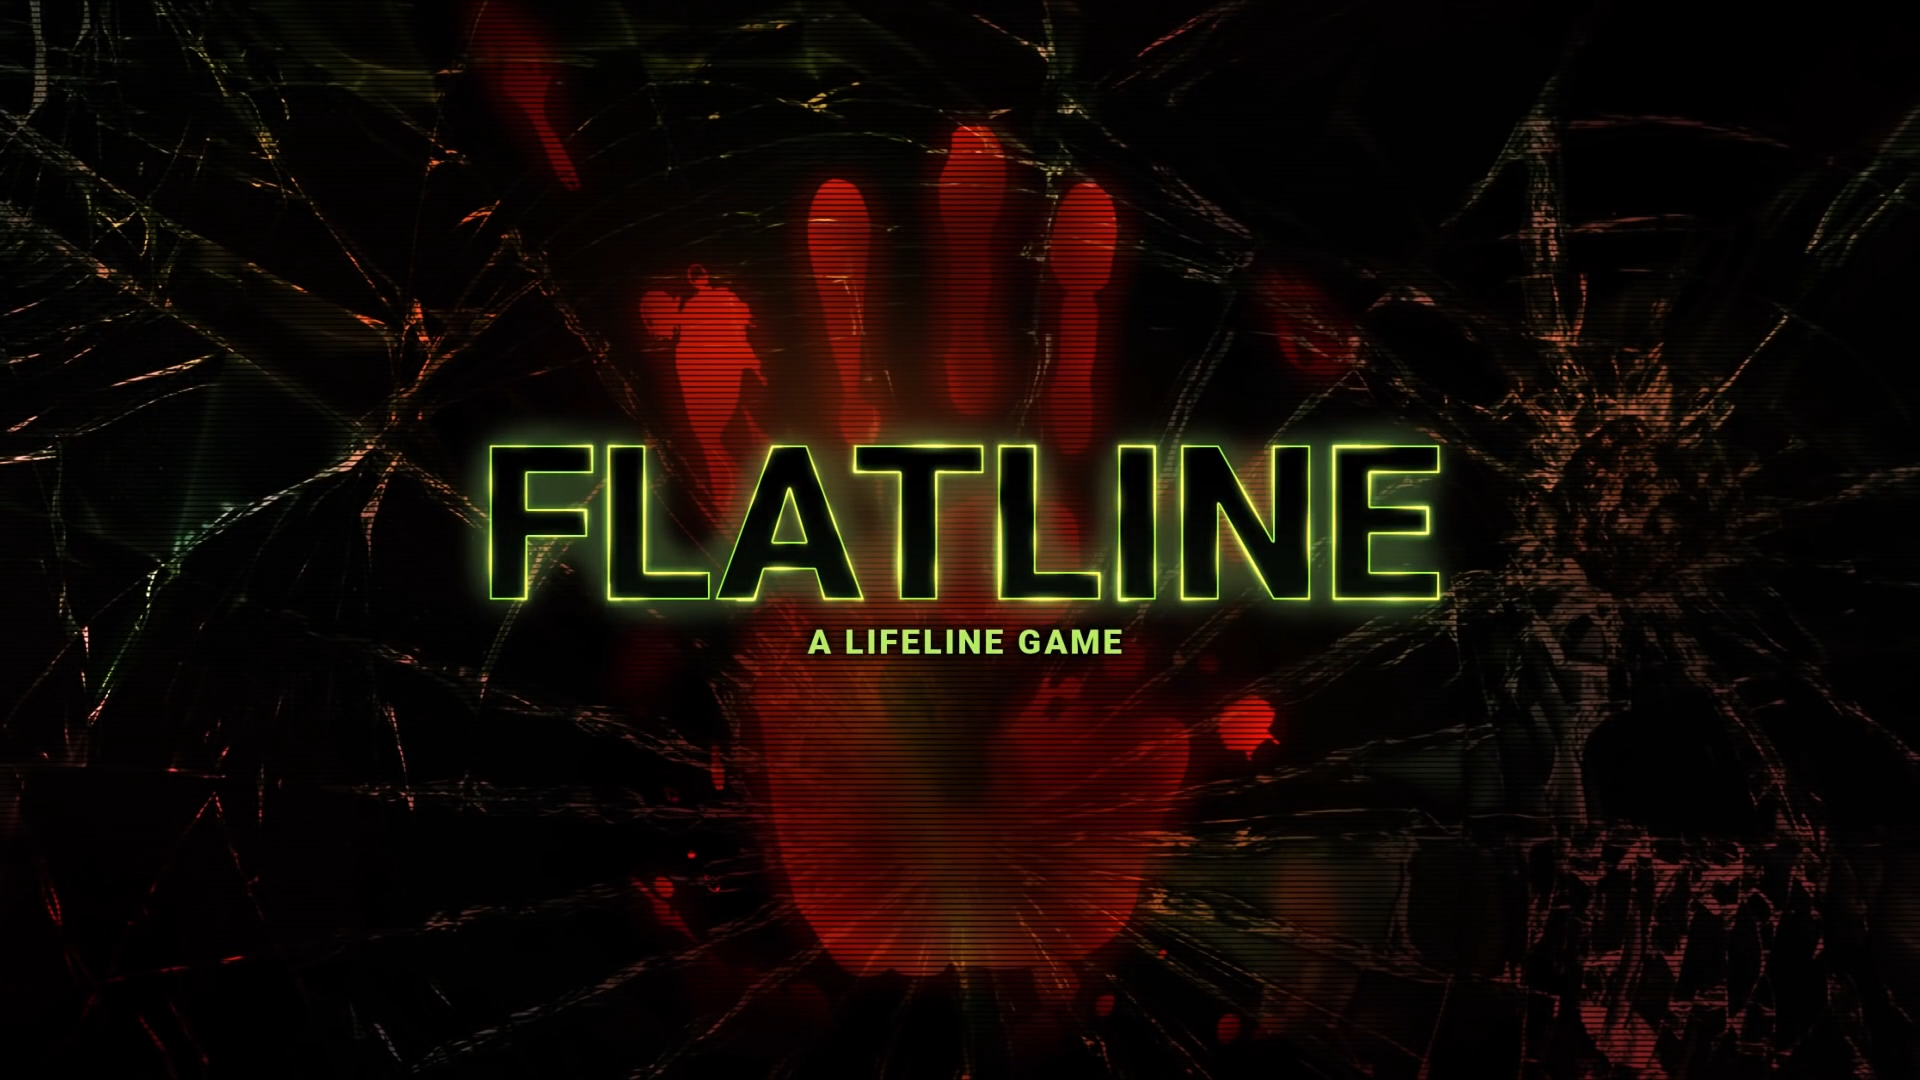 Lifeline Flatline